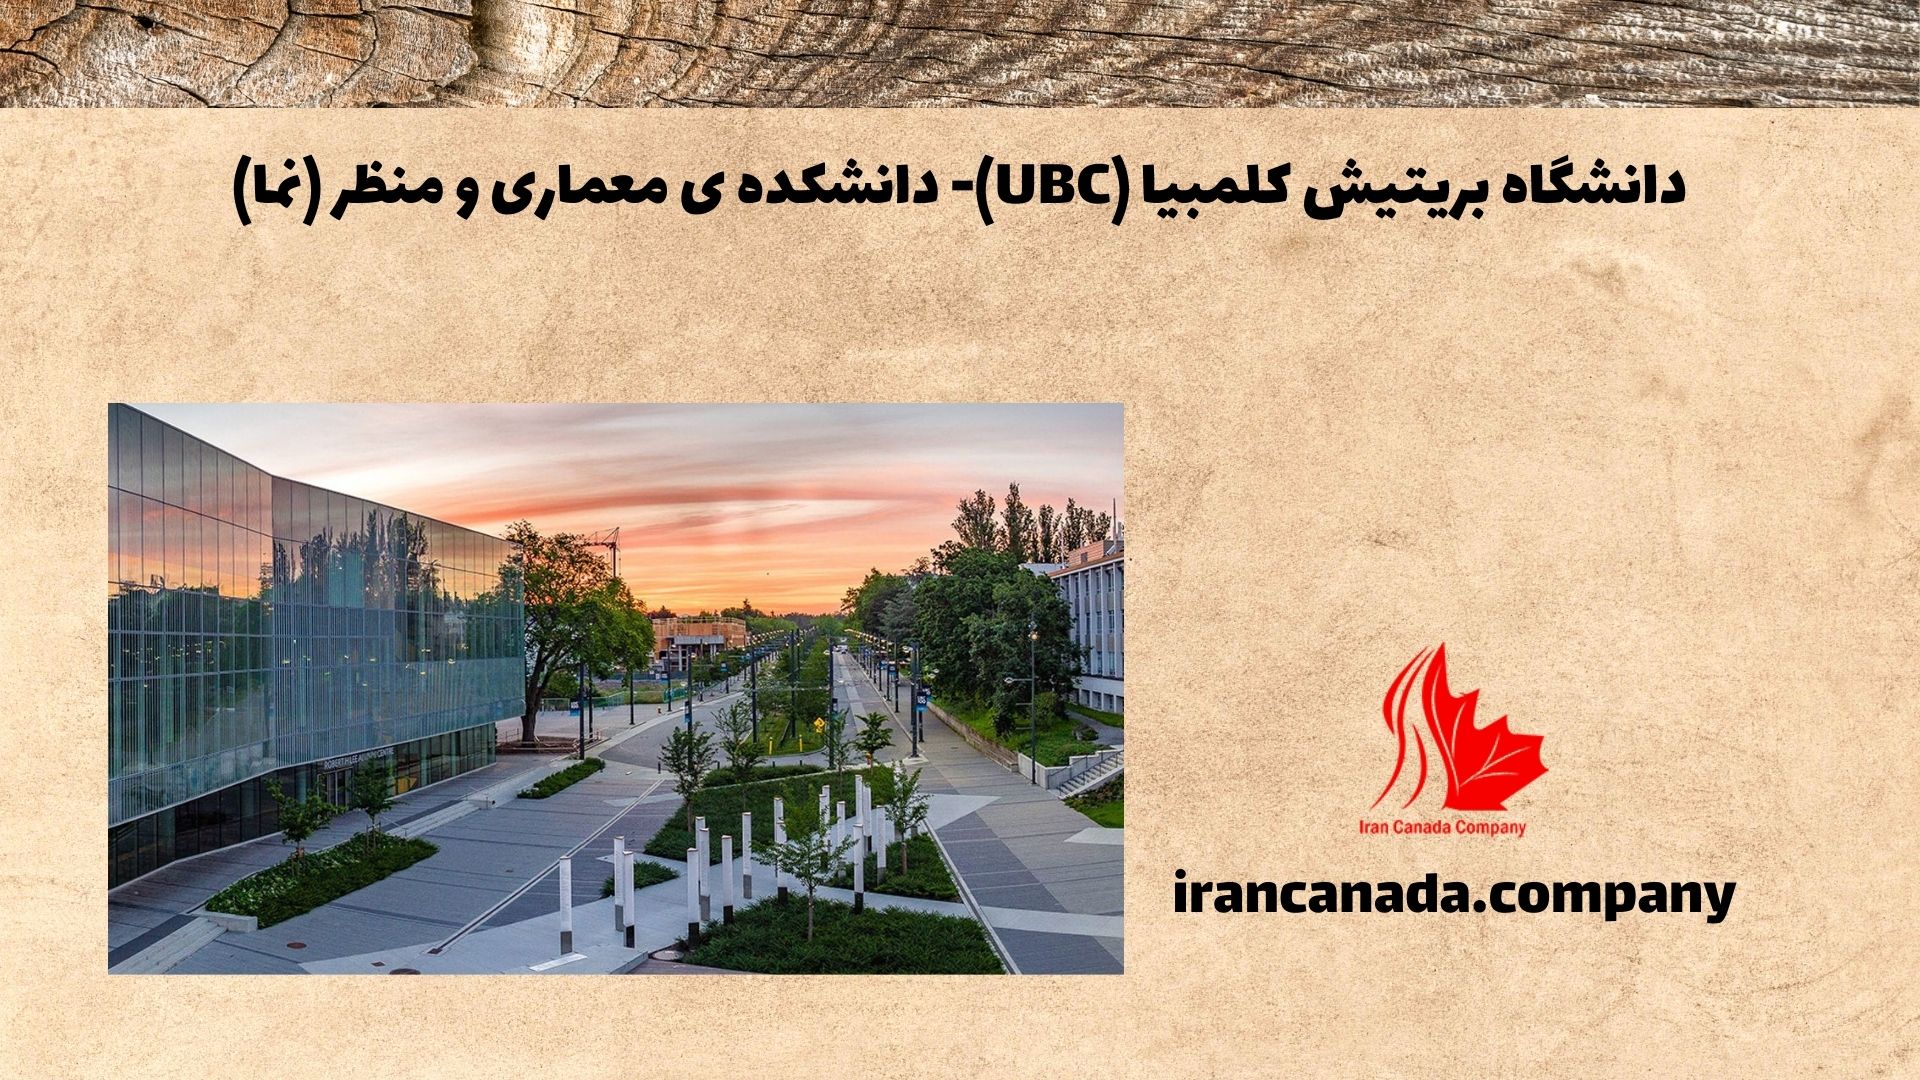 دانشگاه بریتیش کلمبیا (UBC)- دانشکده ی معماری و منظر (نما)